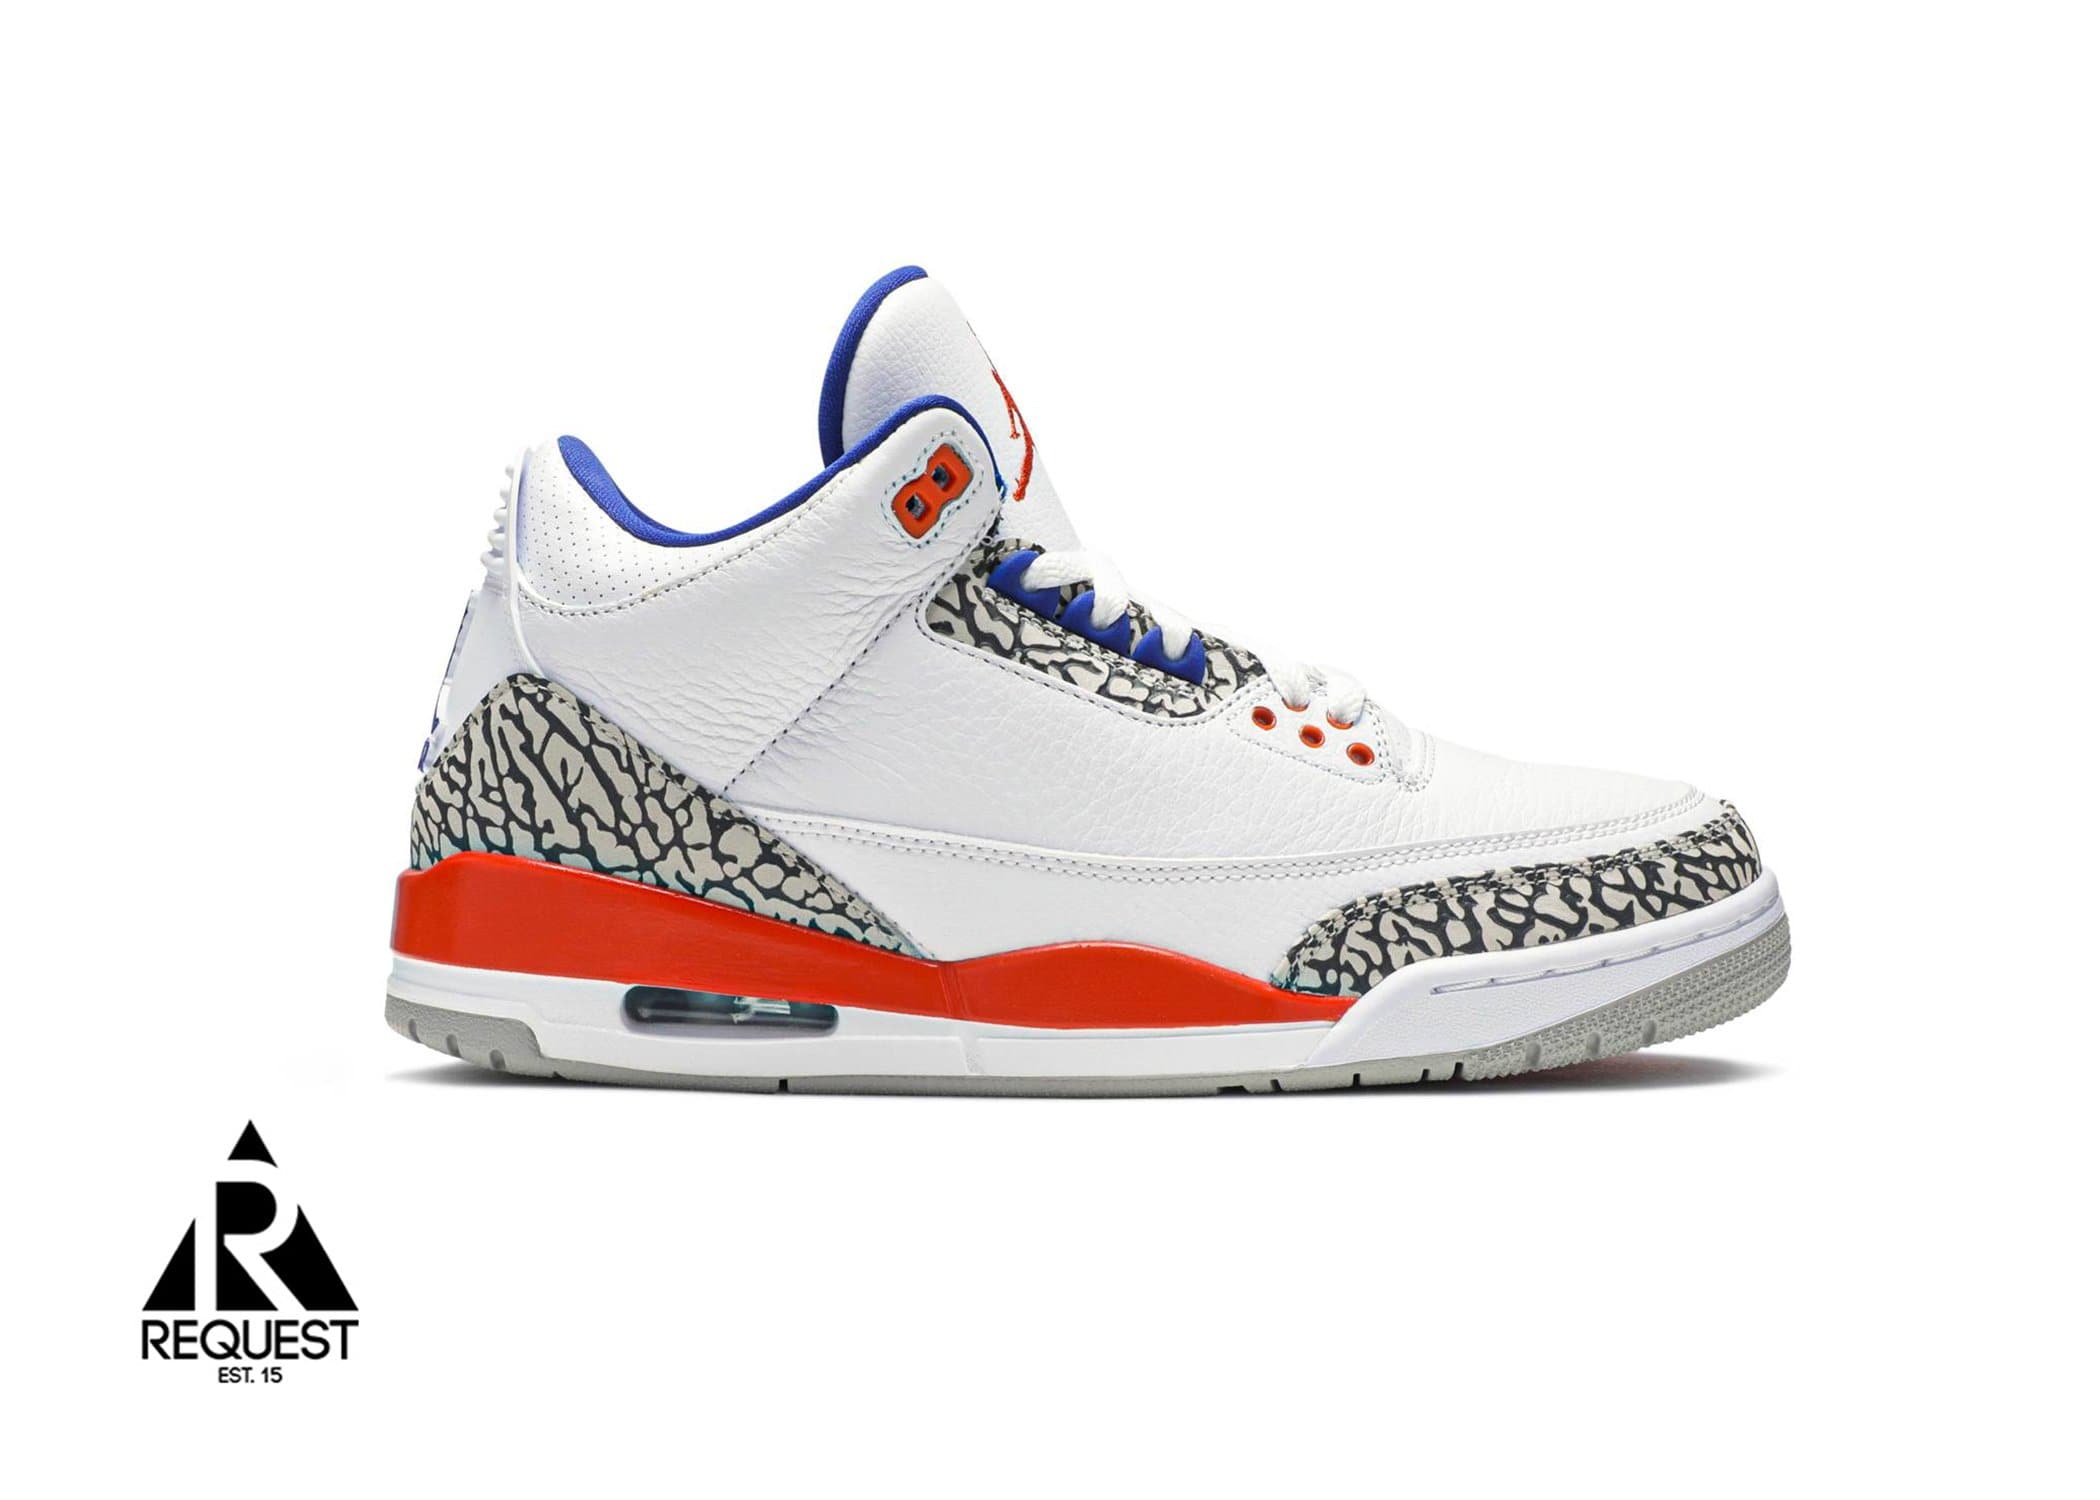 Air Jordan 3 Retro “Knicks”